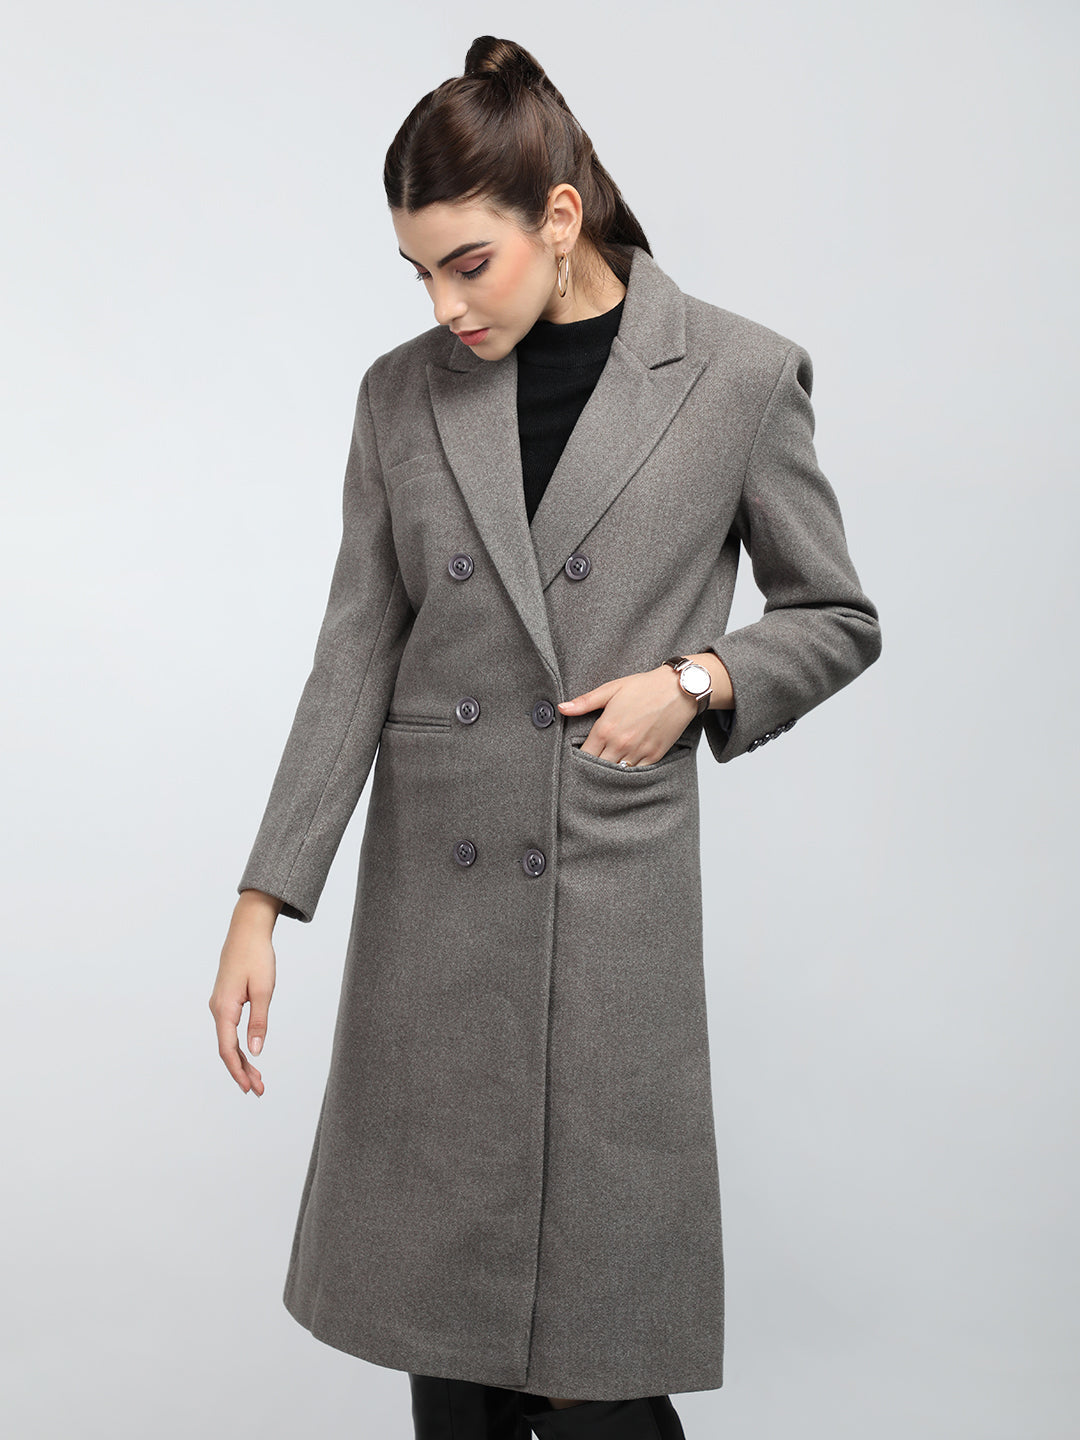 Women Winter Wear Stylish Coat